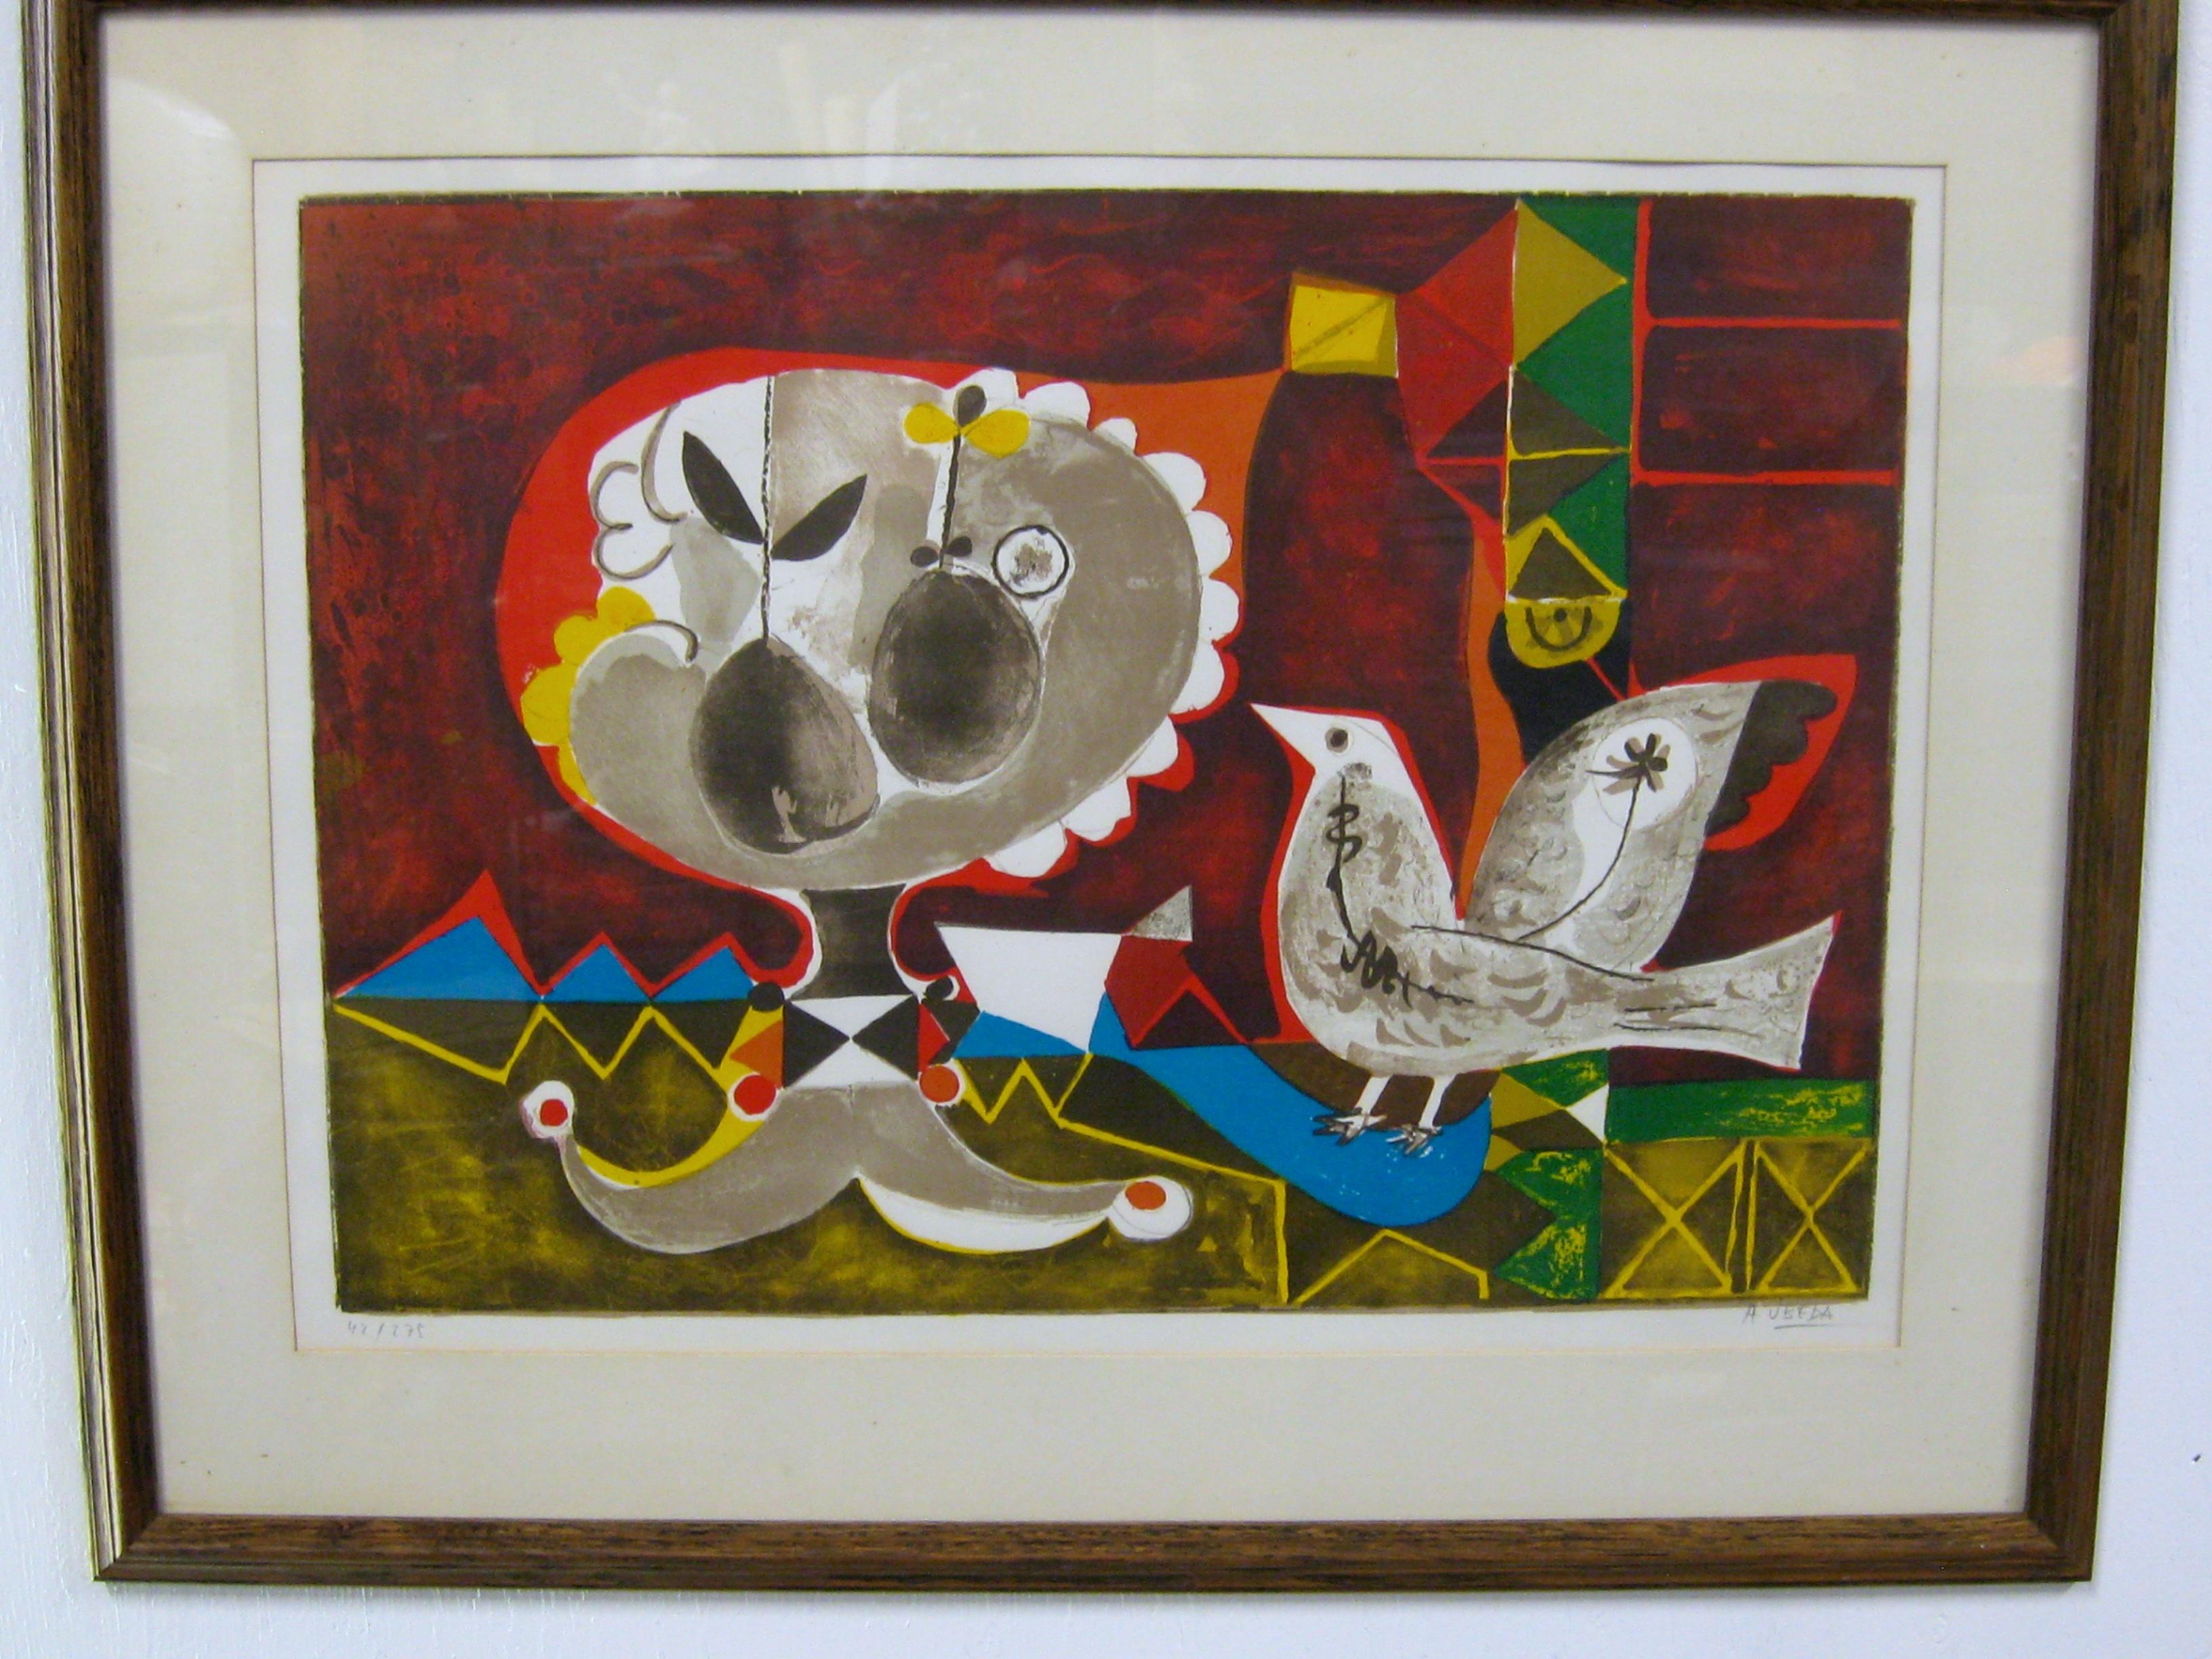 Magnifique lithographie fantaisiste signée et numérotée à la main par l'artiste espagnol Augustin Ubeda, vers les années 1970. La lithographie représente un oiseau coloré et un fruit. Couleurs vibrantes. Les œuvres ont été vendues par